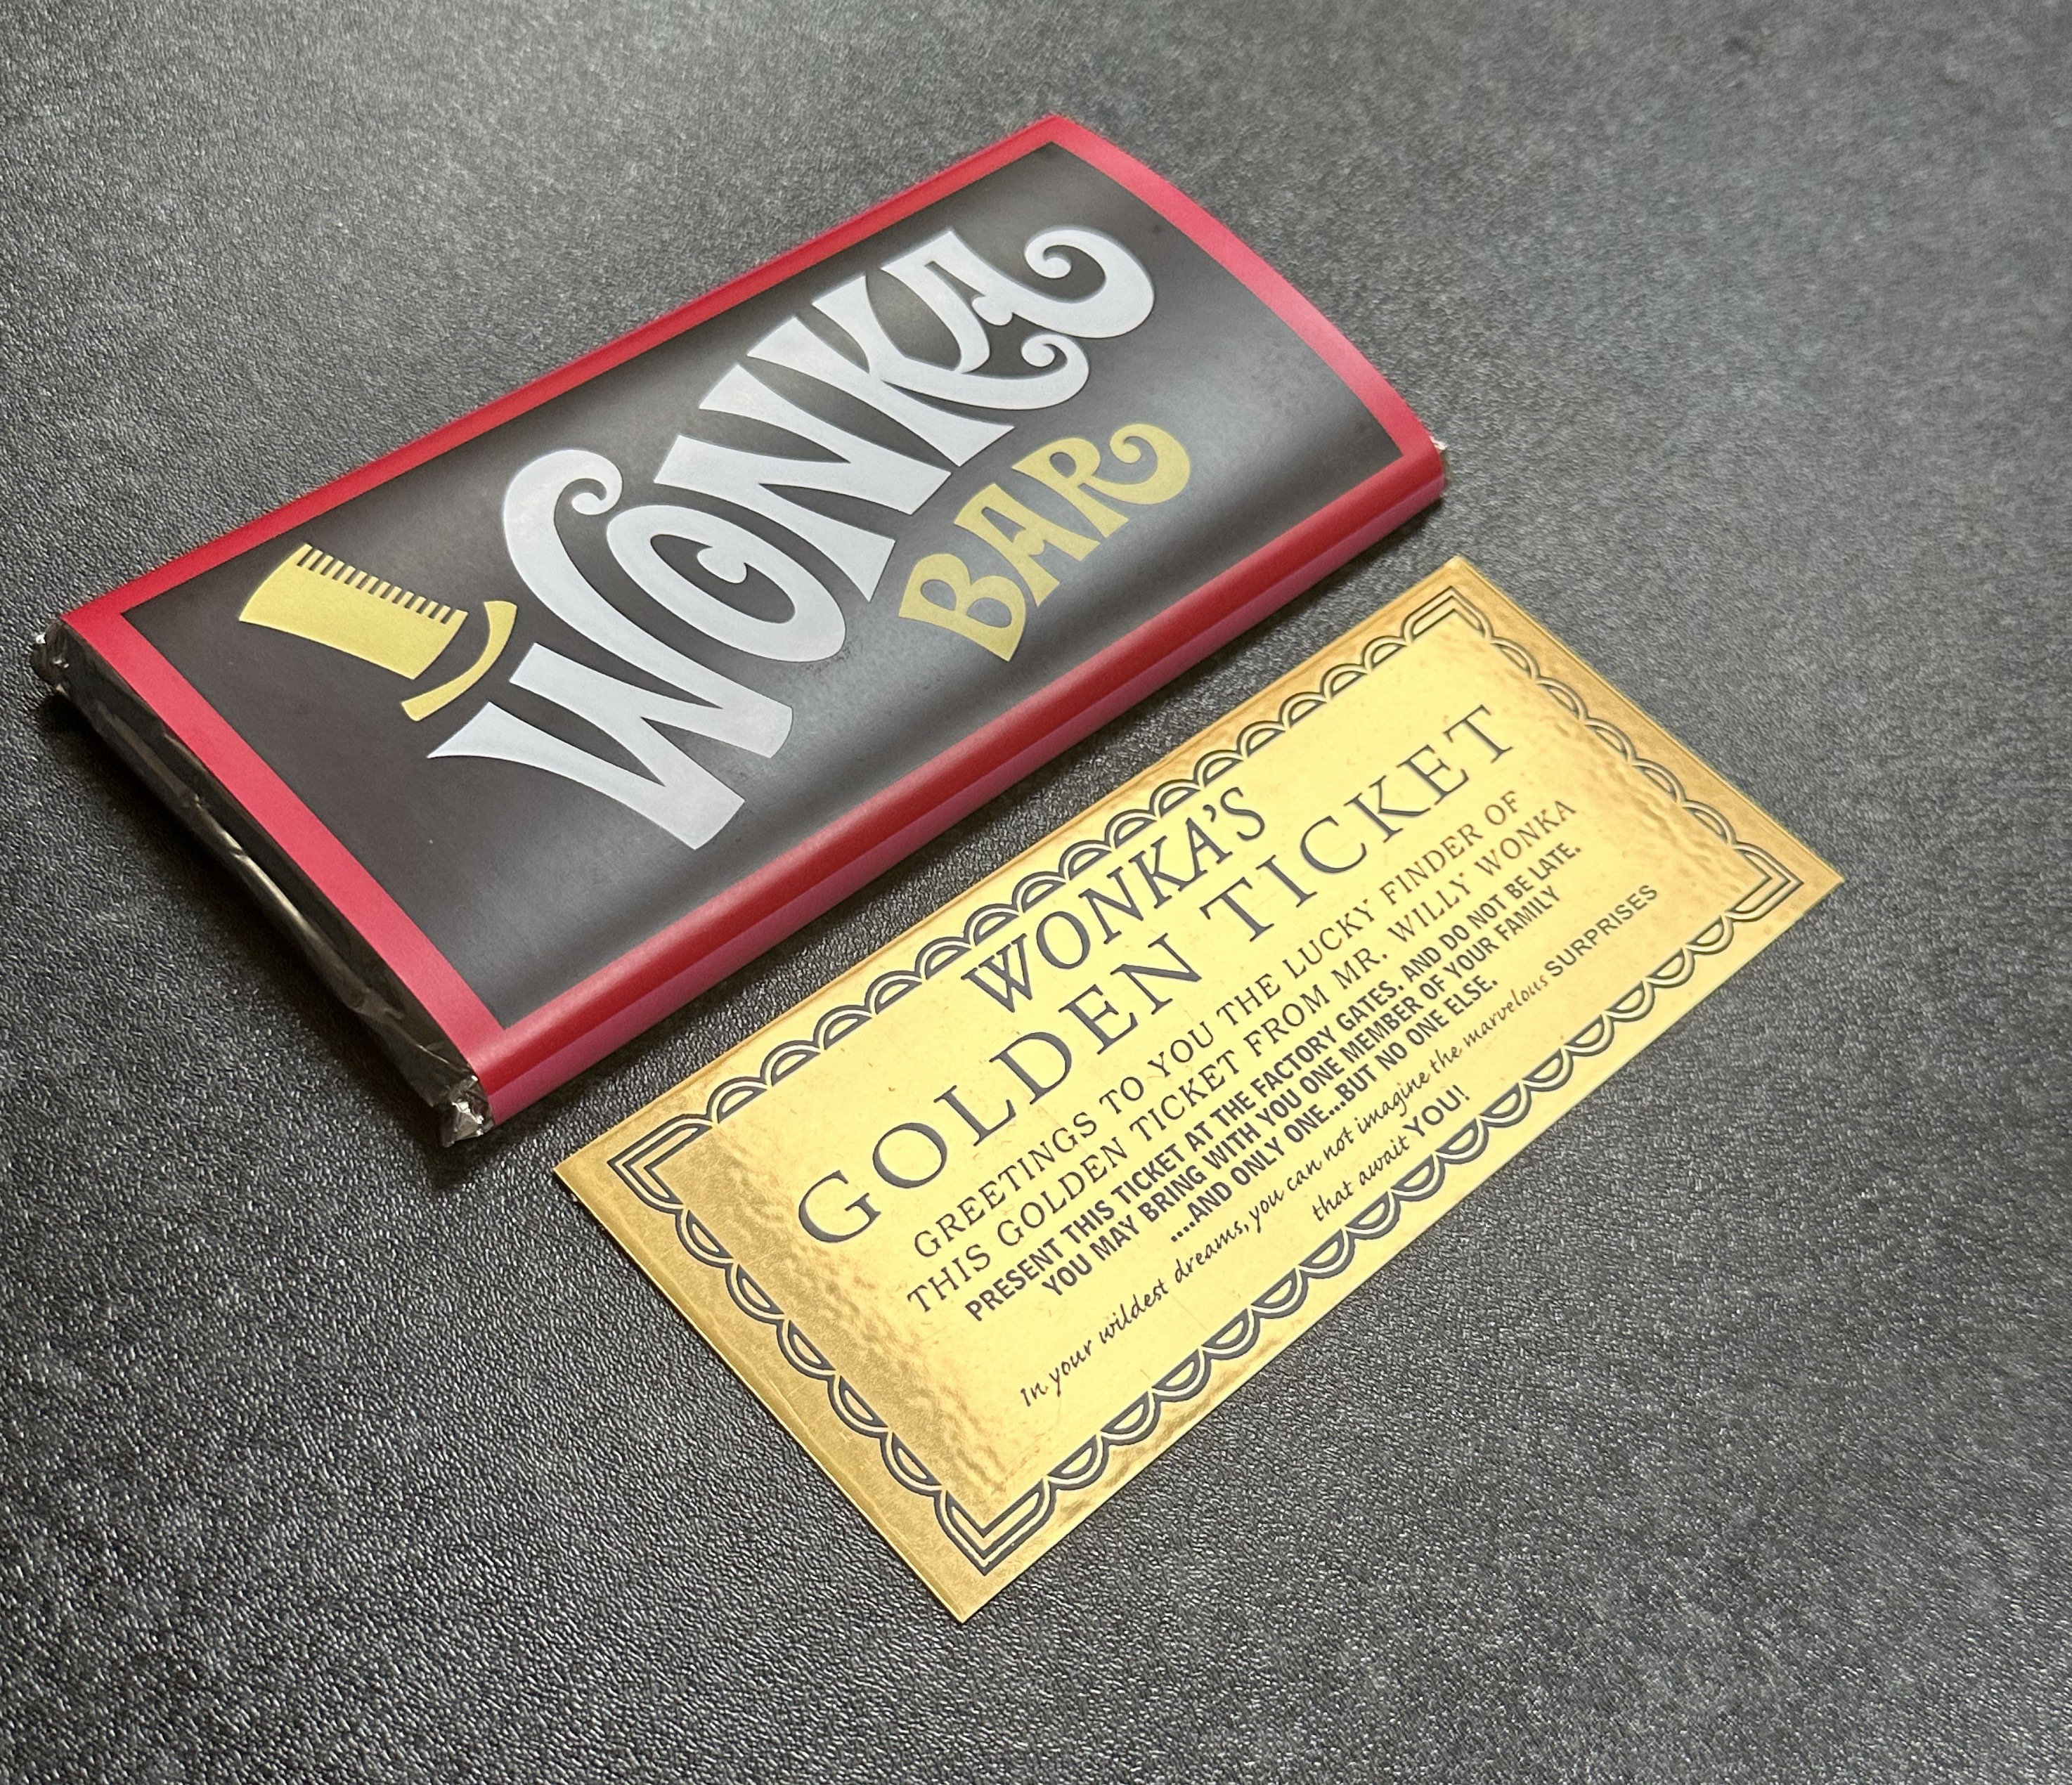 Wonka et son chocolat de retour au cinéma! C'est bon ou pas? 🍫, Articles